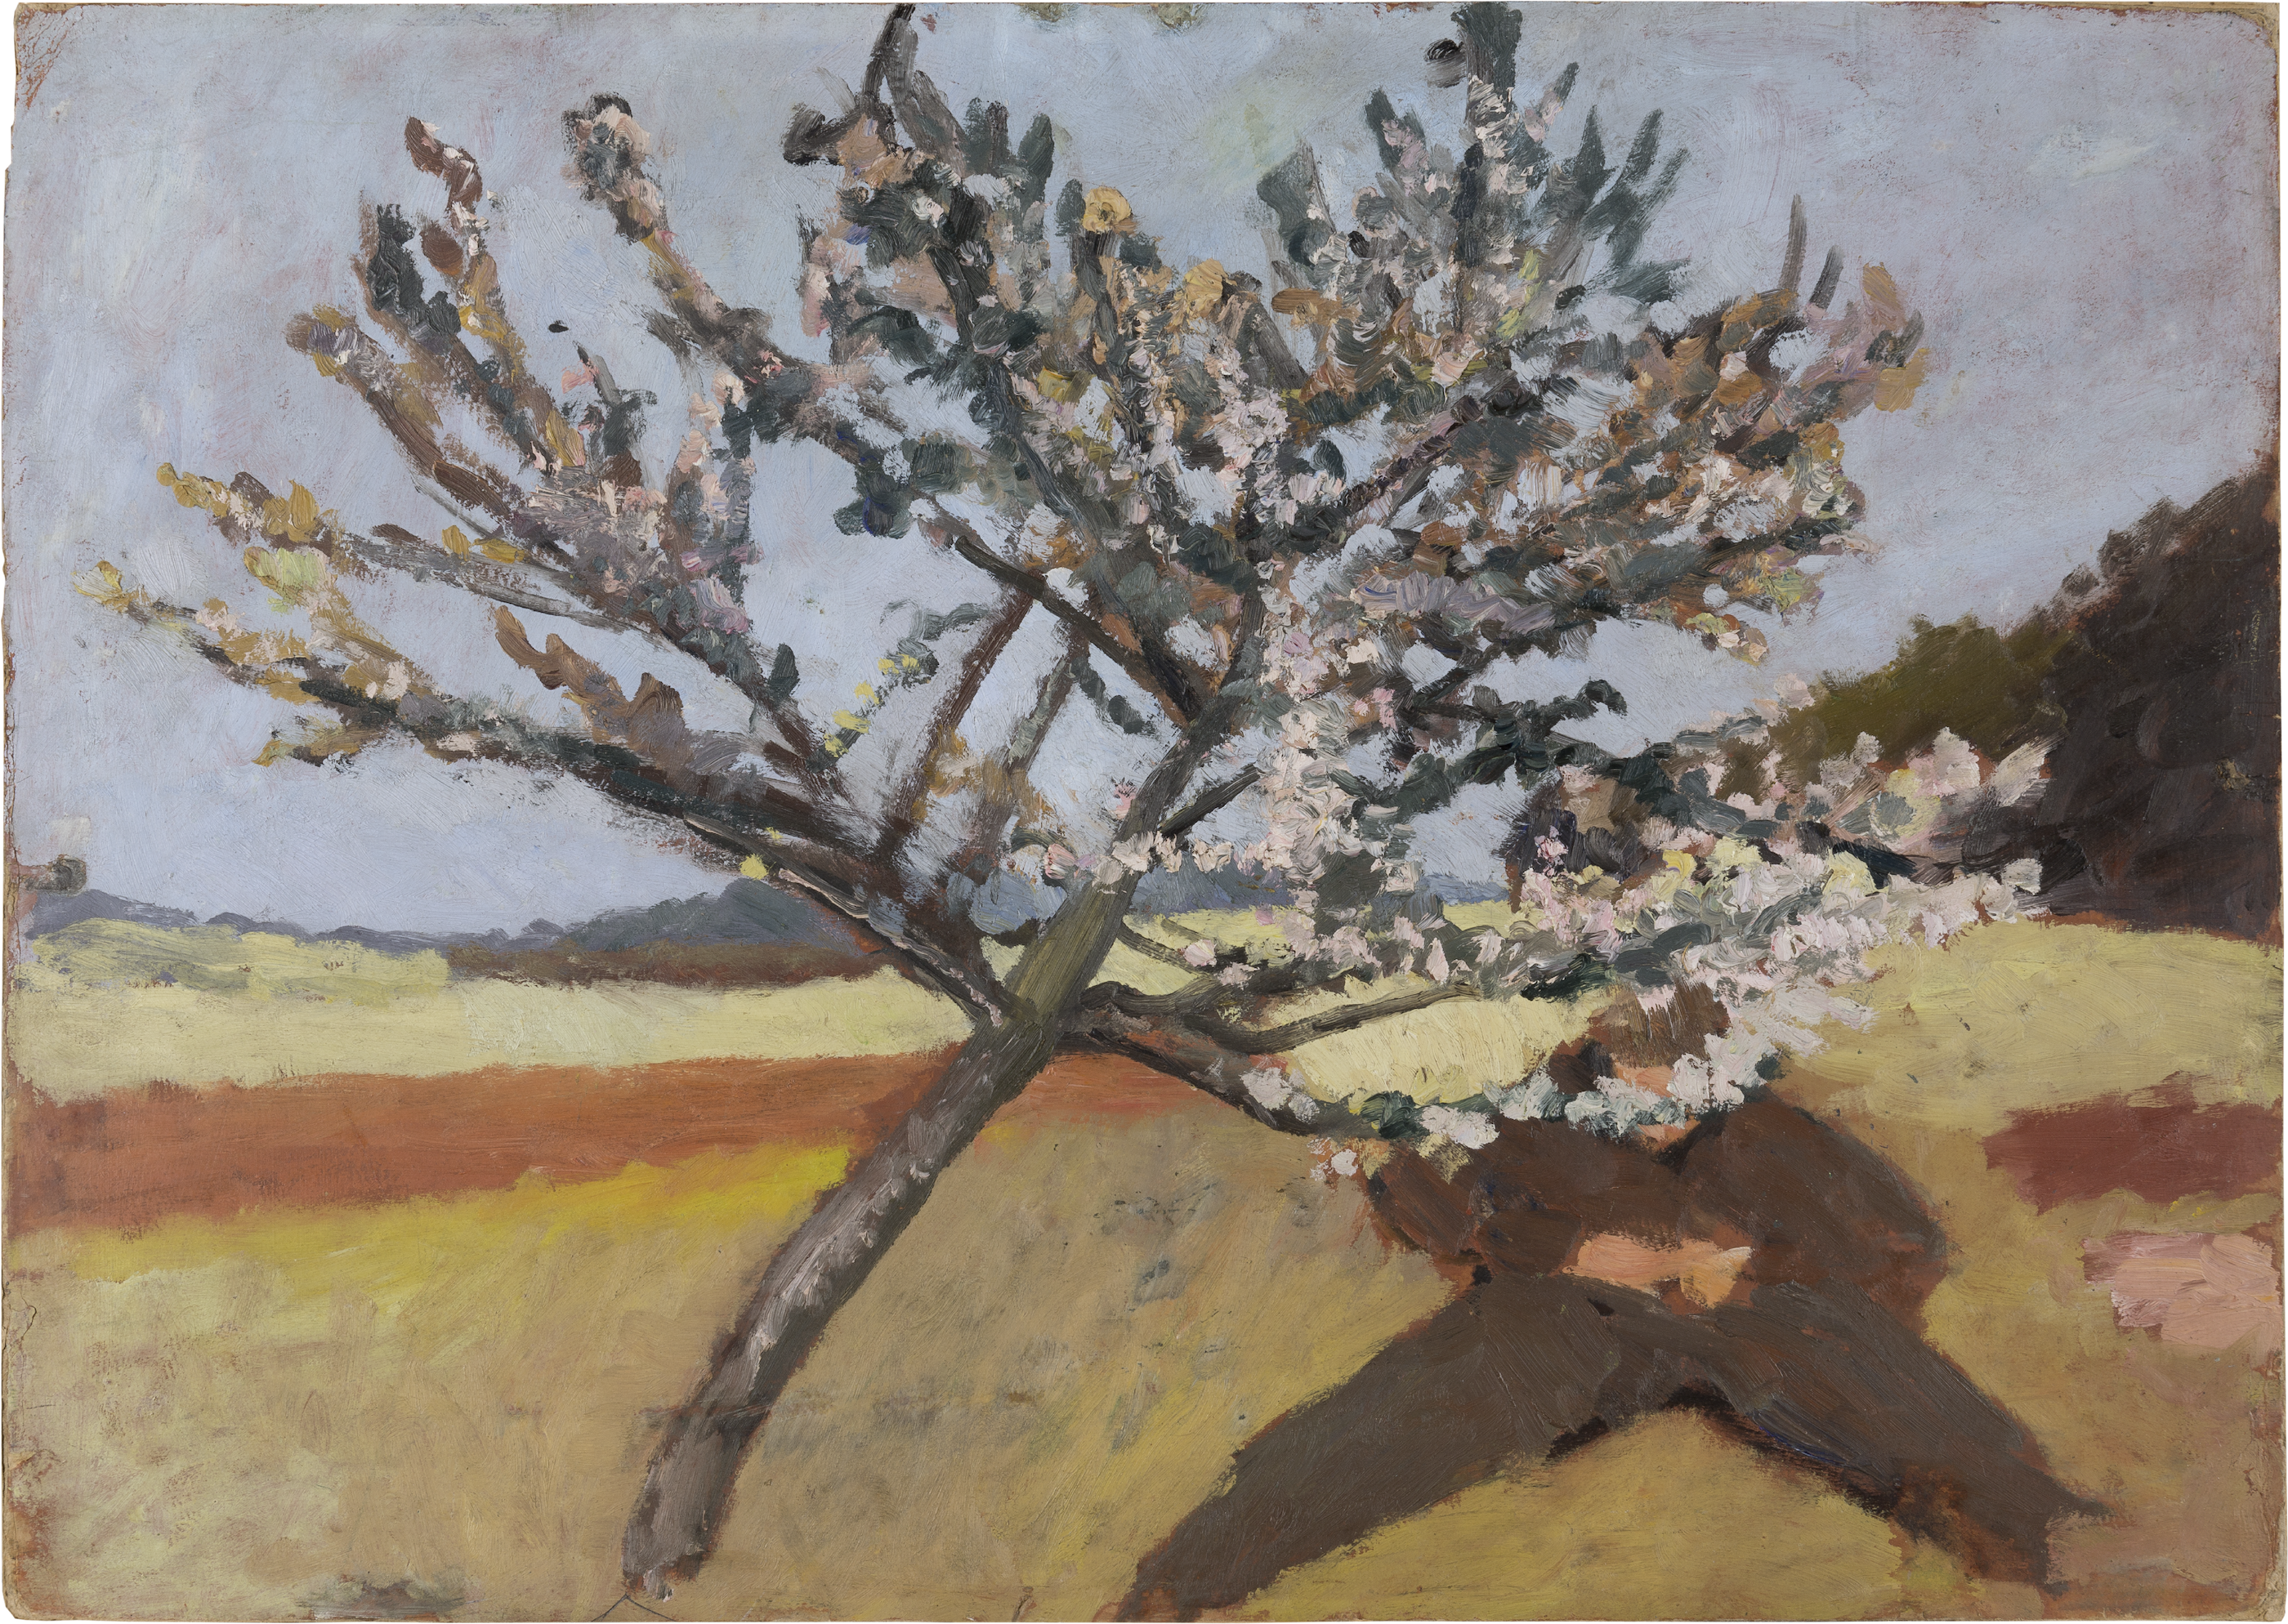 躺在繁花樹下的男人 by Paula Modersohn-Becker - 1903 年 - 52 x 74 釐米 